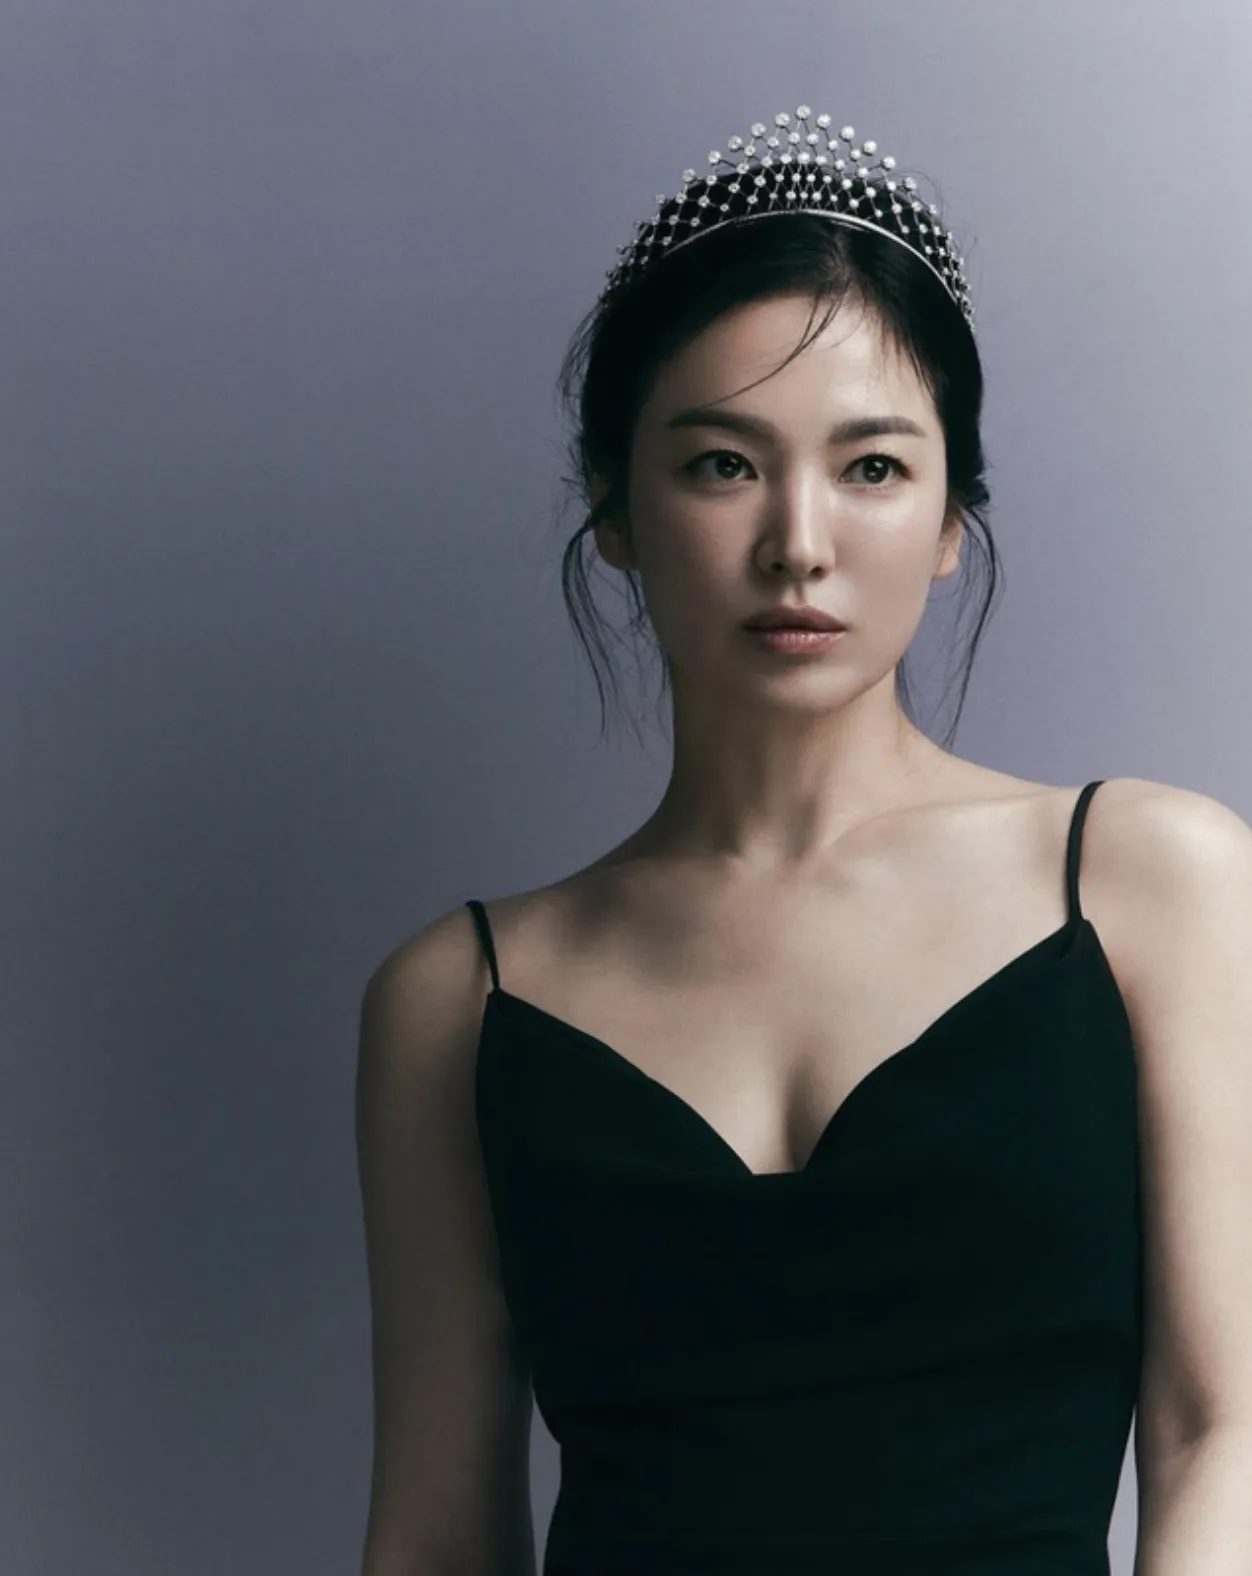 Danh tiếng của Song Hye Kyo ngày càng lên 'như diều gặp gió' dù nhiều lần 'lỡ duyên' với phim ảnh